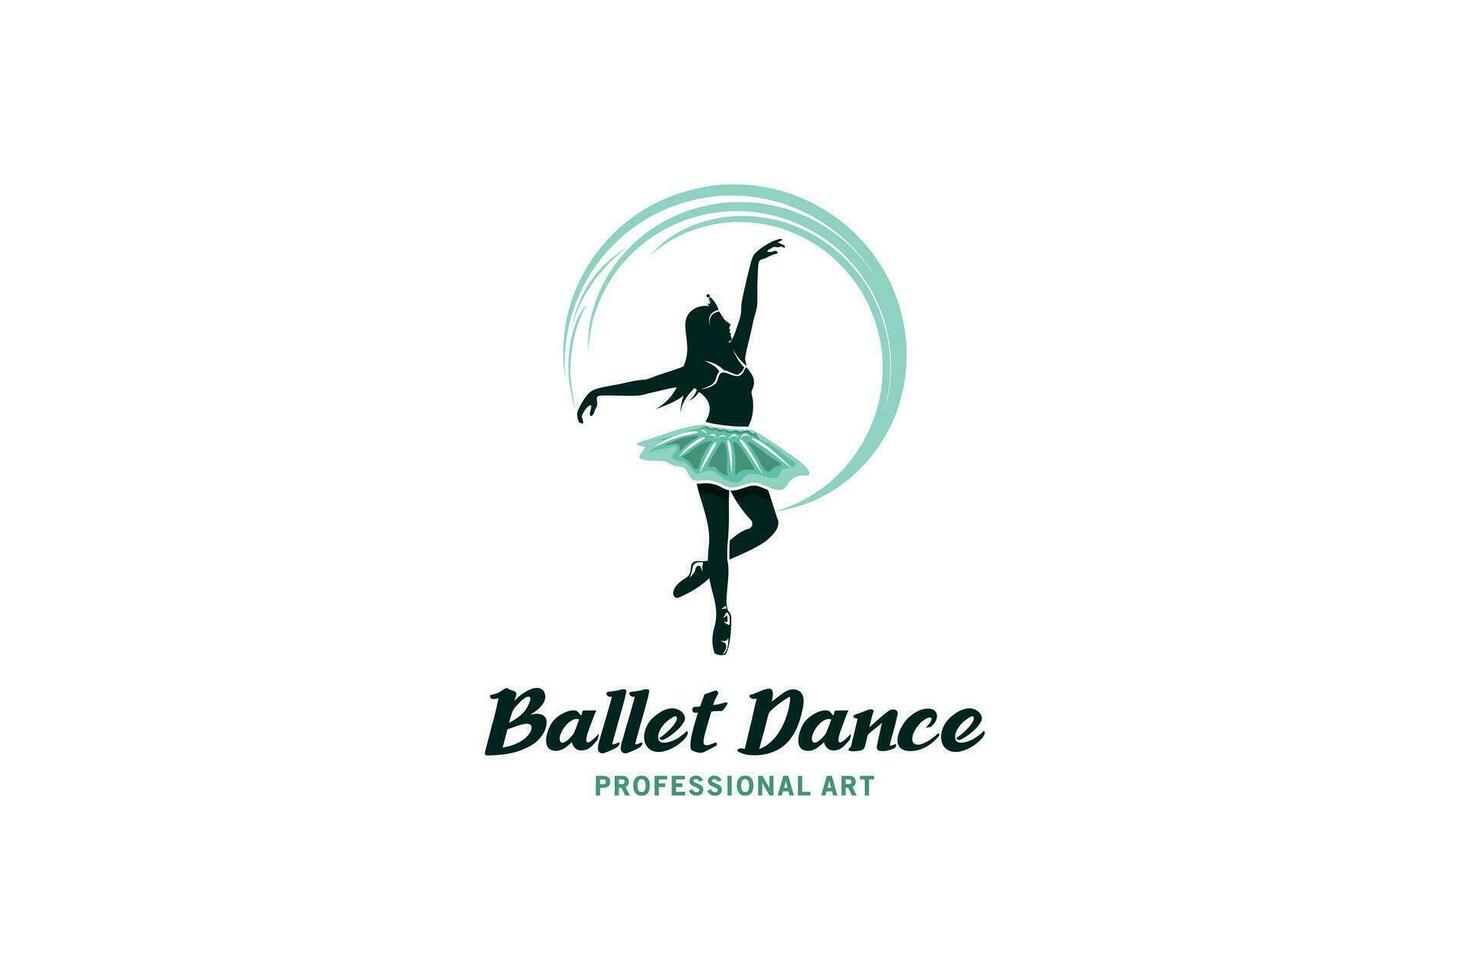 moderno balletto danza logo disegno, ballerina donna vettore illustrazione per fitness danza arte sport logo